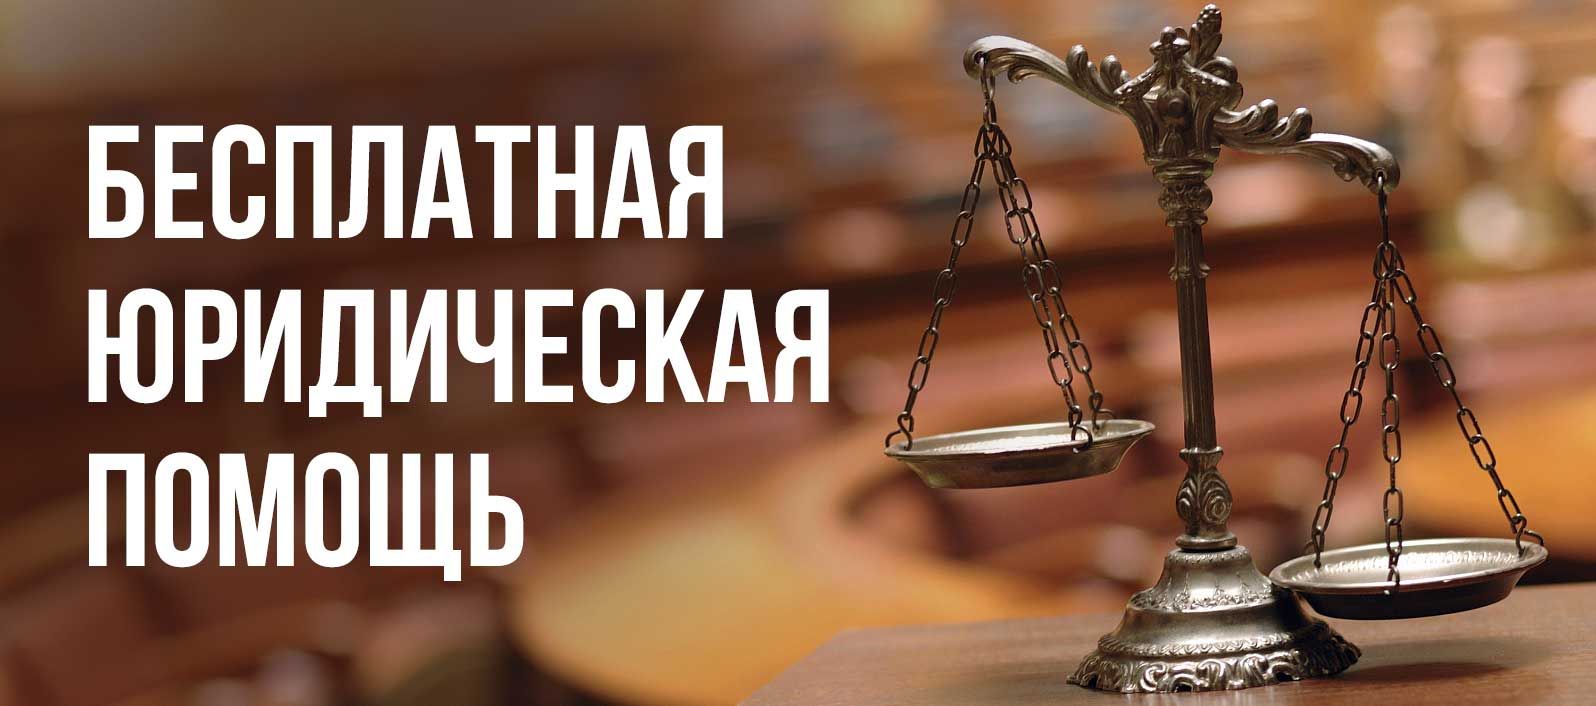 Единый день бесплатной юридической помощи пройдет на территории Ульяновской области